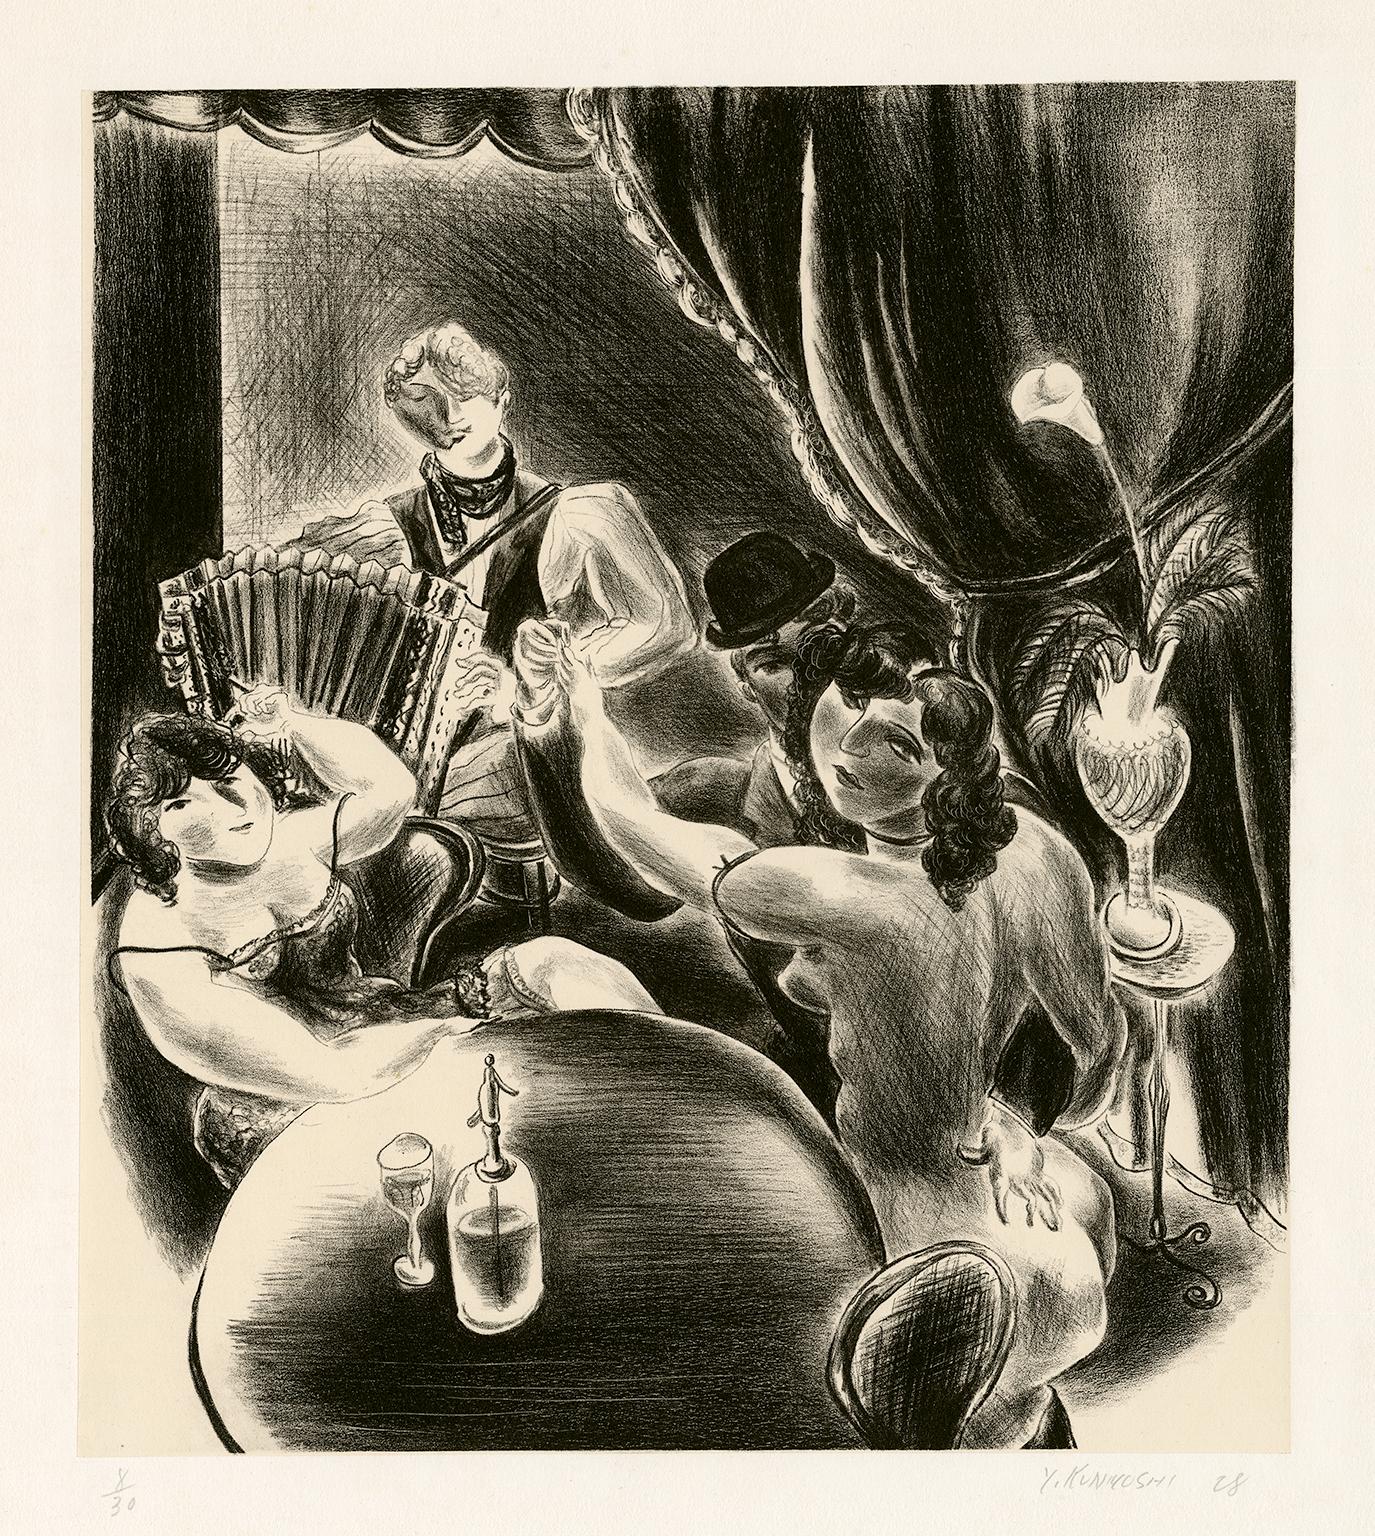 Tanzen" - "les années folles" Paris Masterwork, 1928